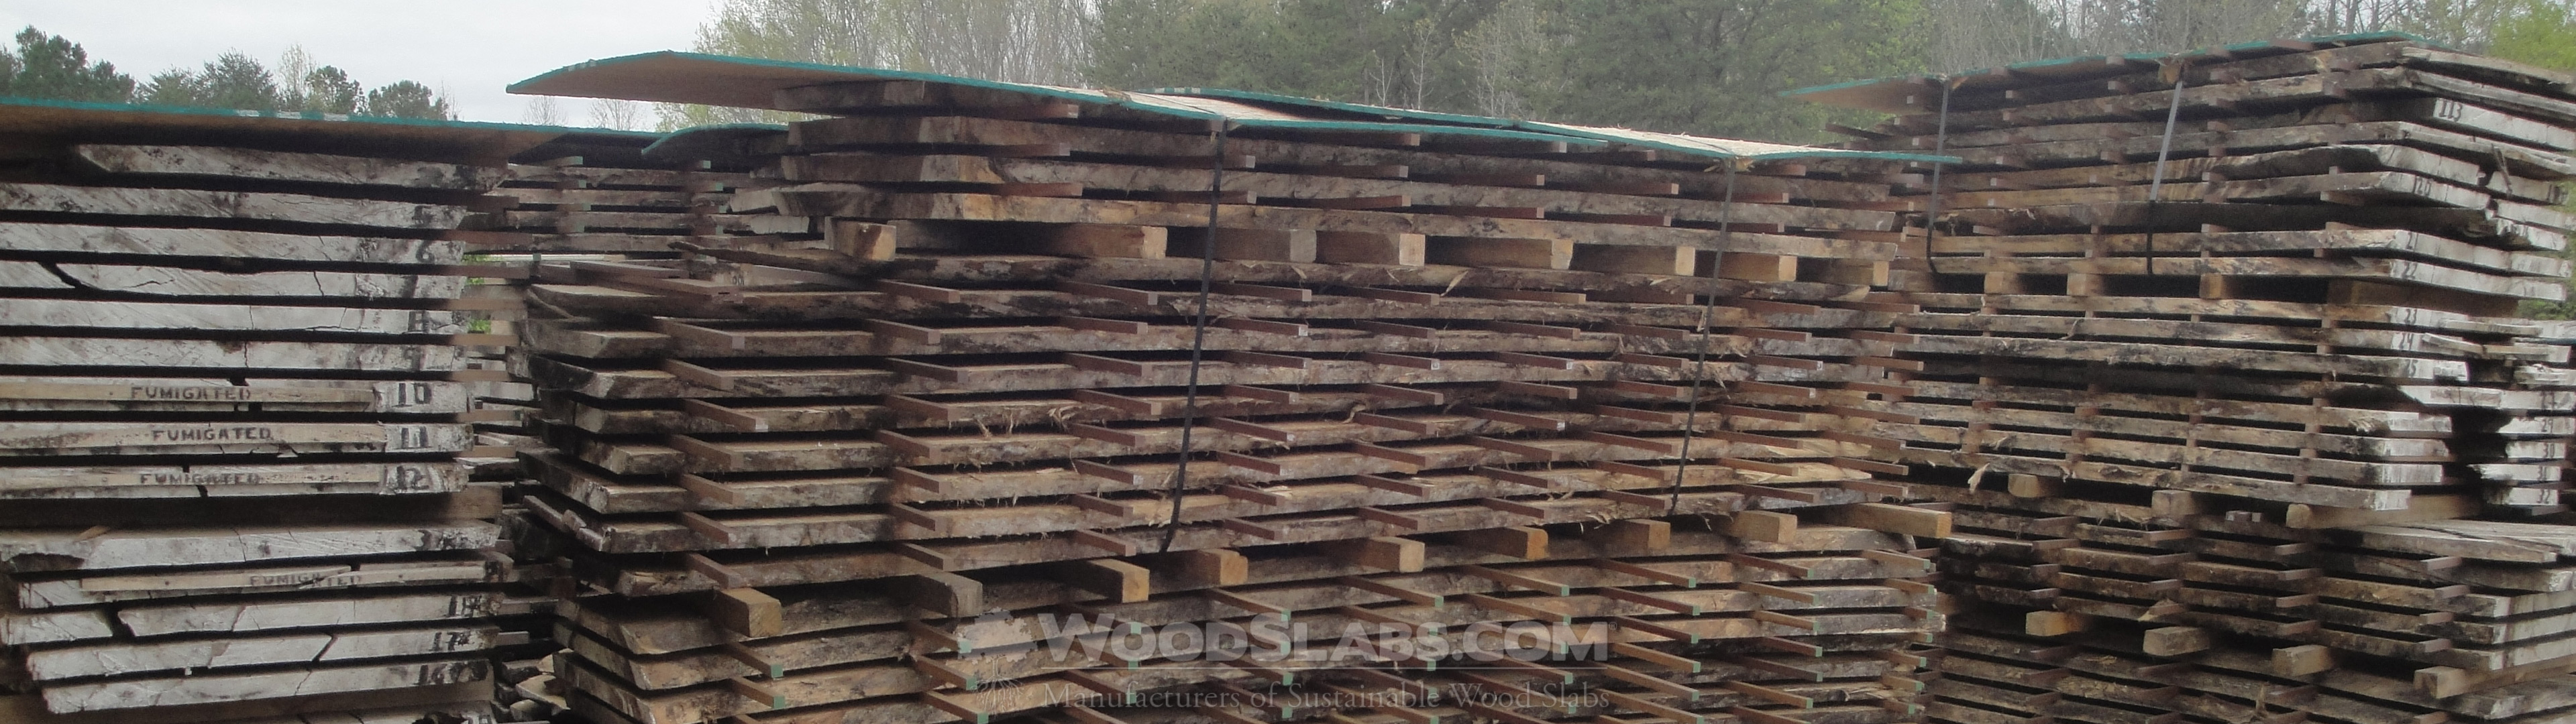 Wholesale Wood Slabs